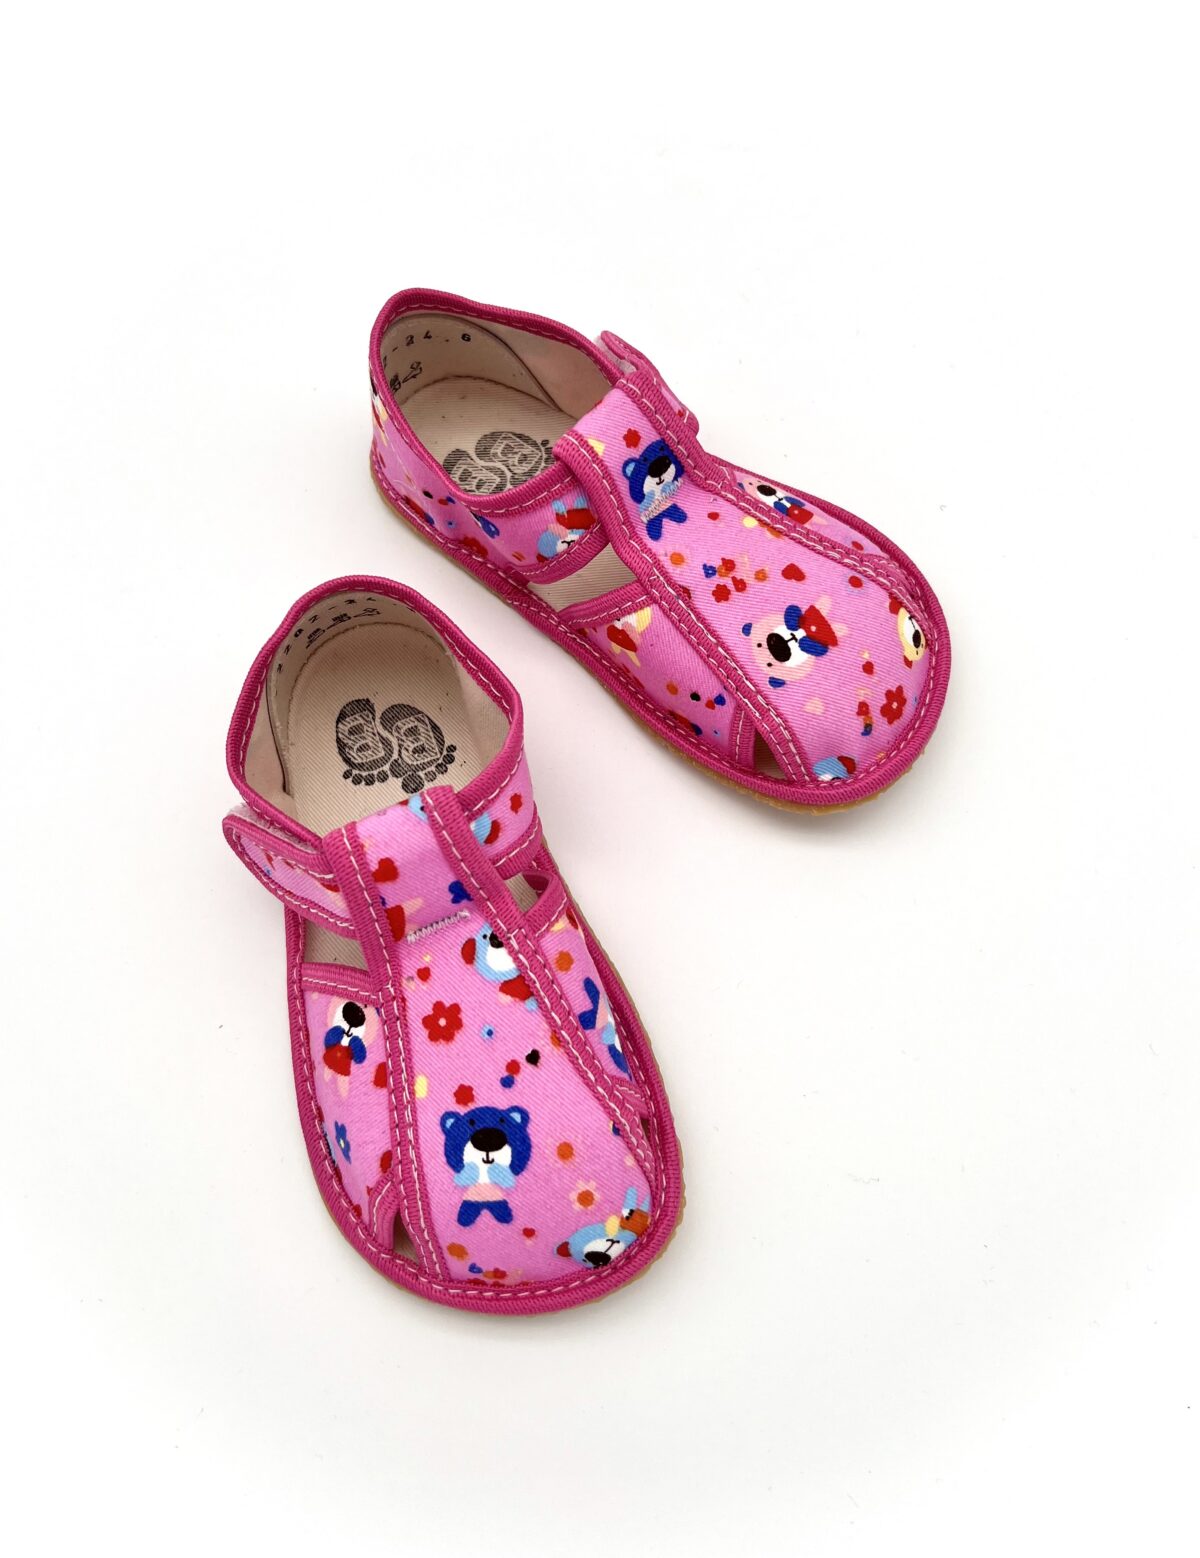 Baby Bare sisejalatsid Pink Teddy Laste barefoot jalatsid - HellyK - Kvaliteetsed lasteriided, villariided, barefoot jalatsid